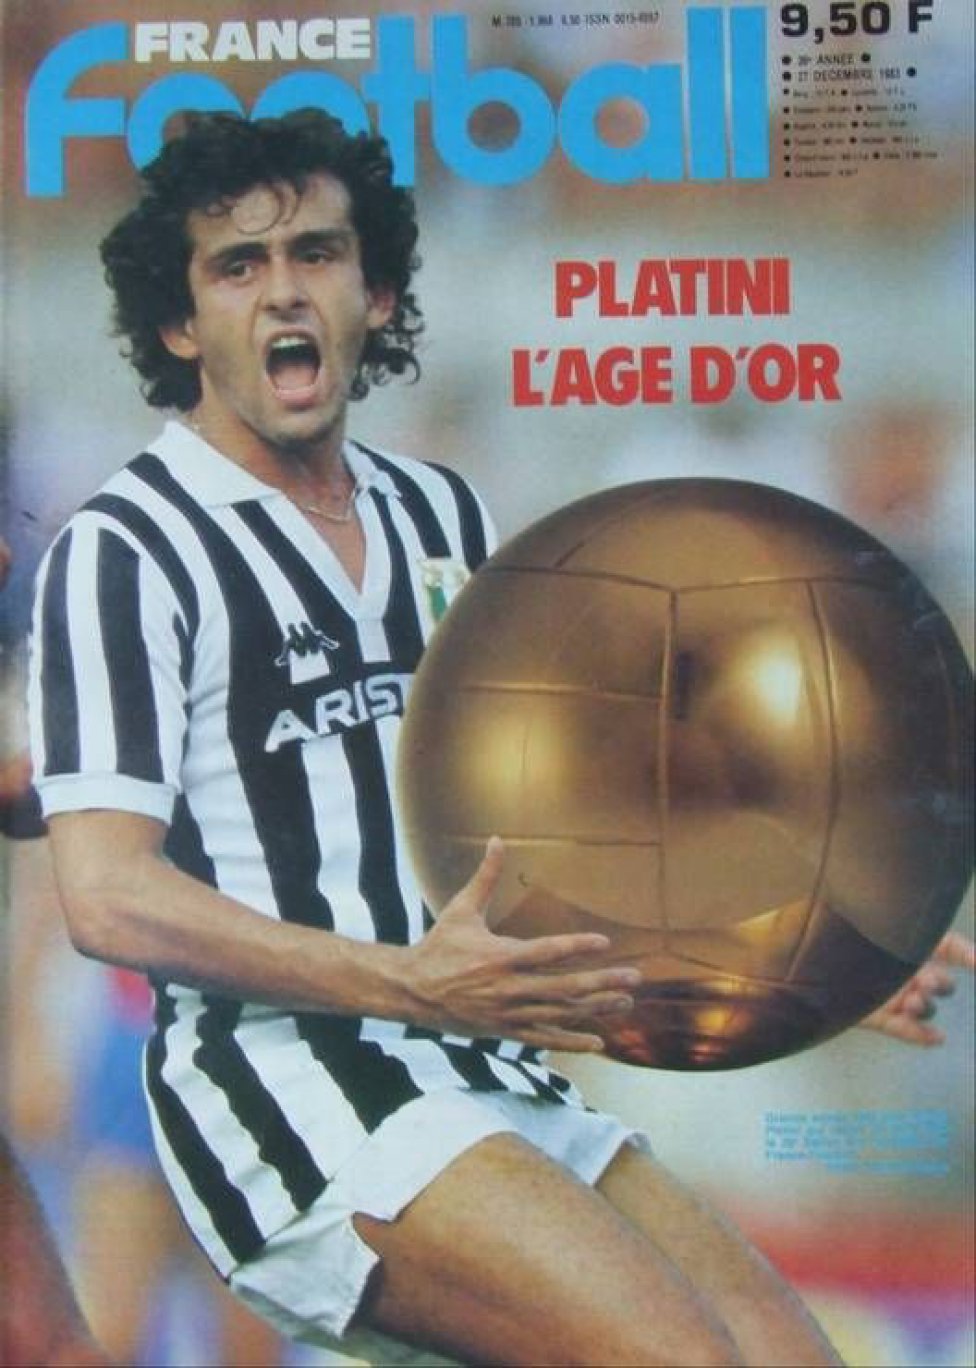 1983. Platini